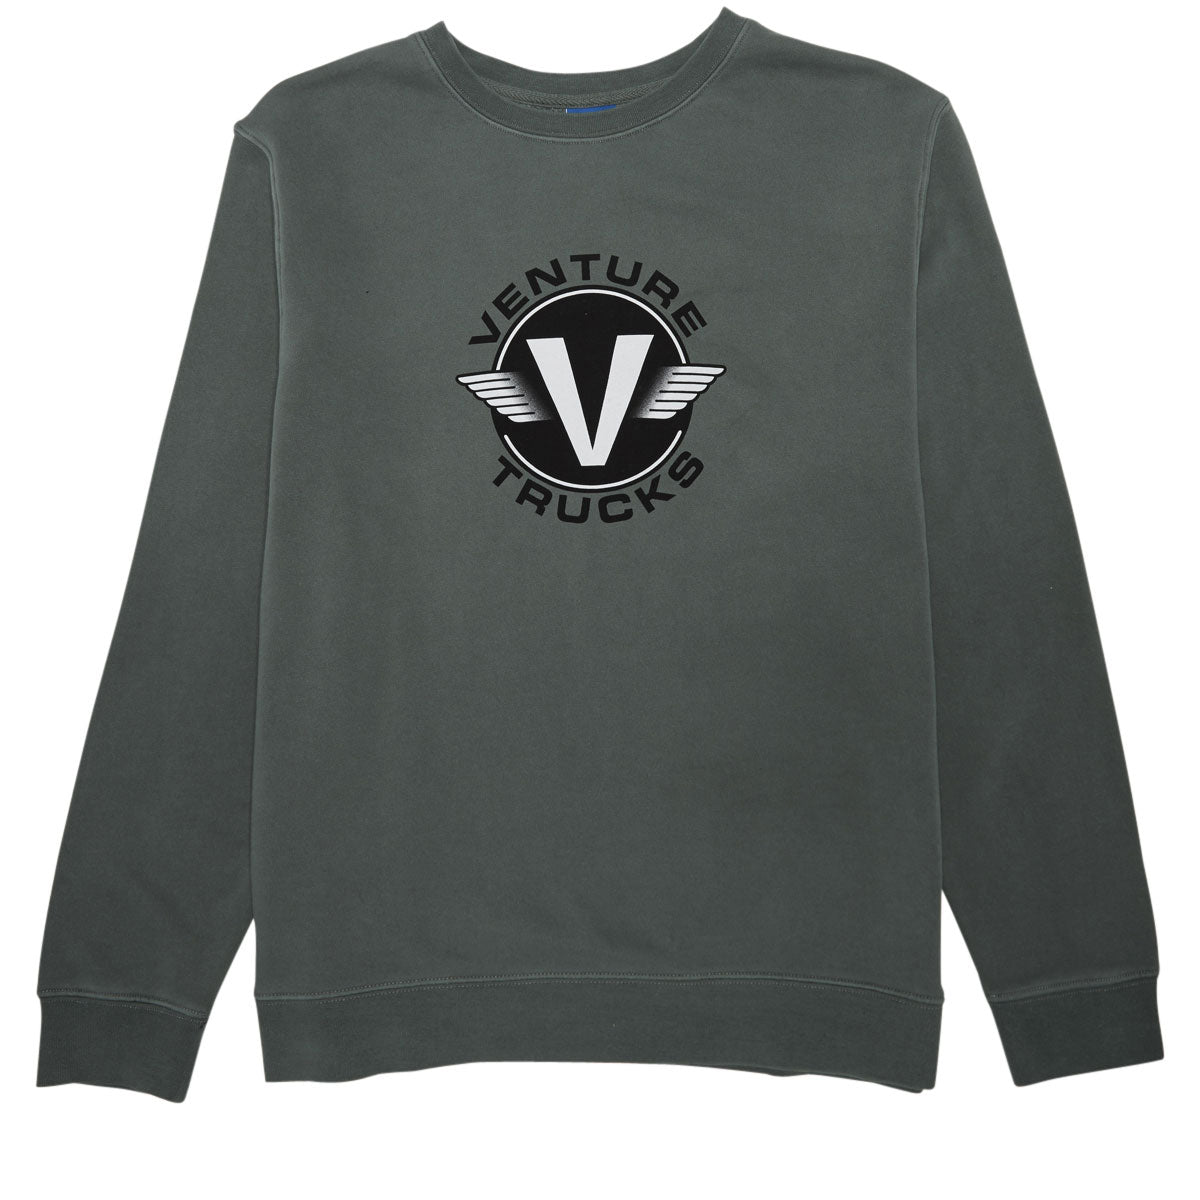 Venture Wings Crew Sweatshirt - Pigment Alpine Green image 1